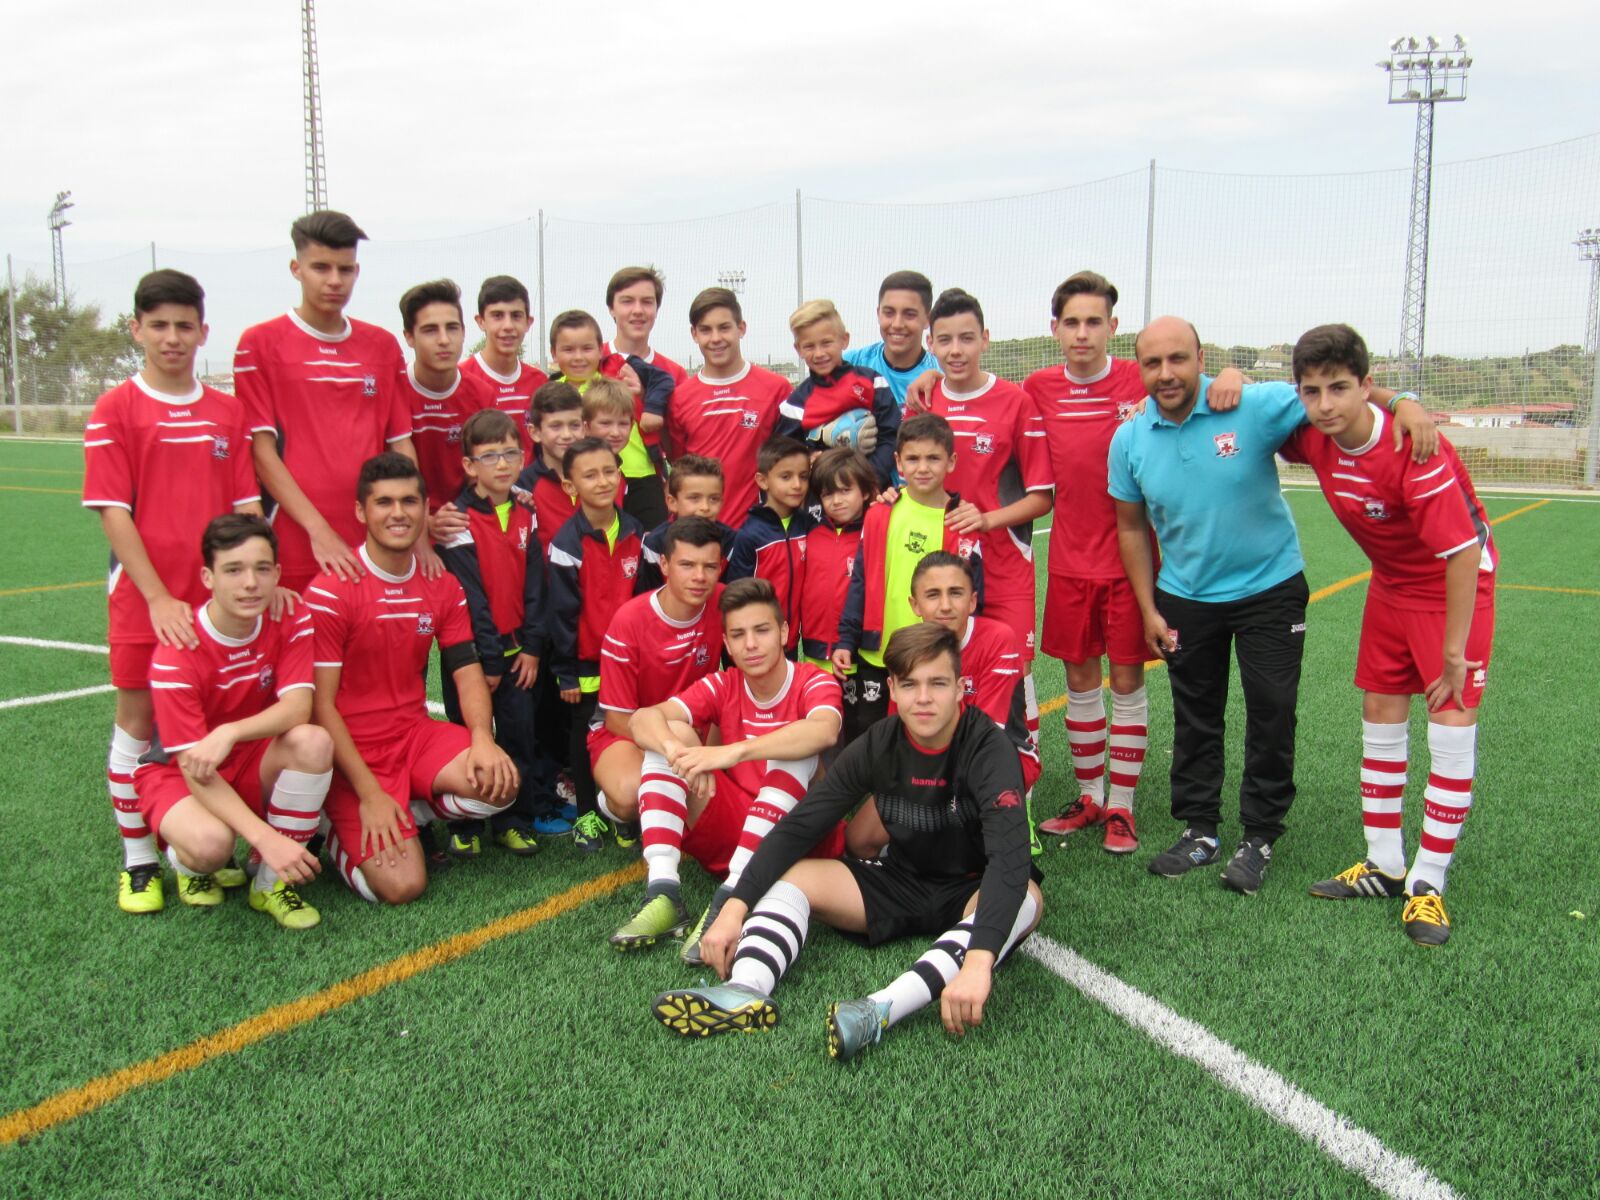 La Asociación Deportiva Templaria culmina una excelente temporada con equipos campeones en todas las categorías